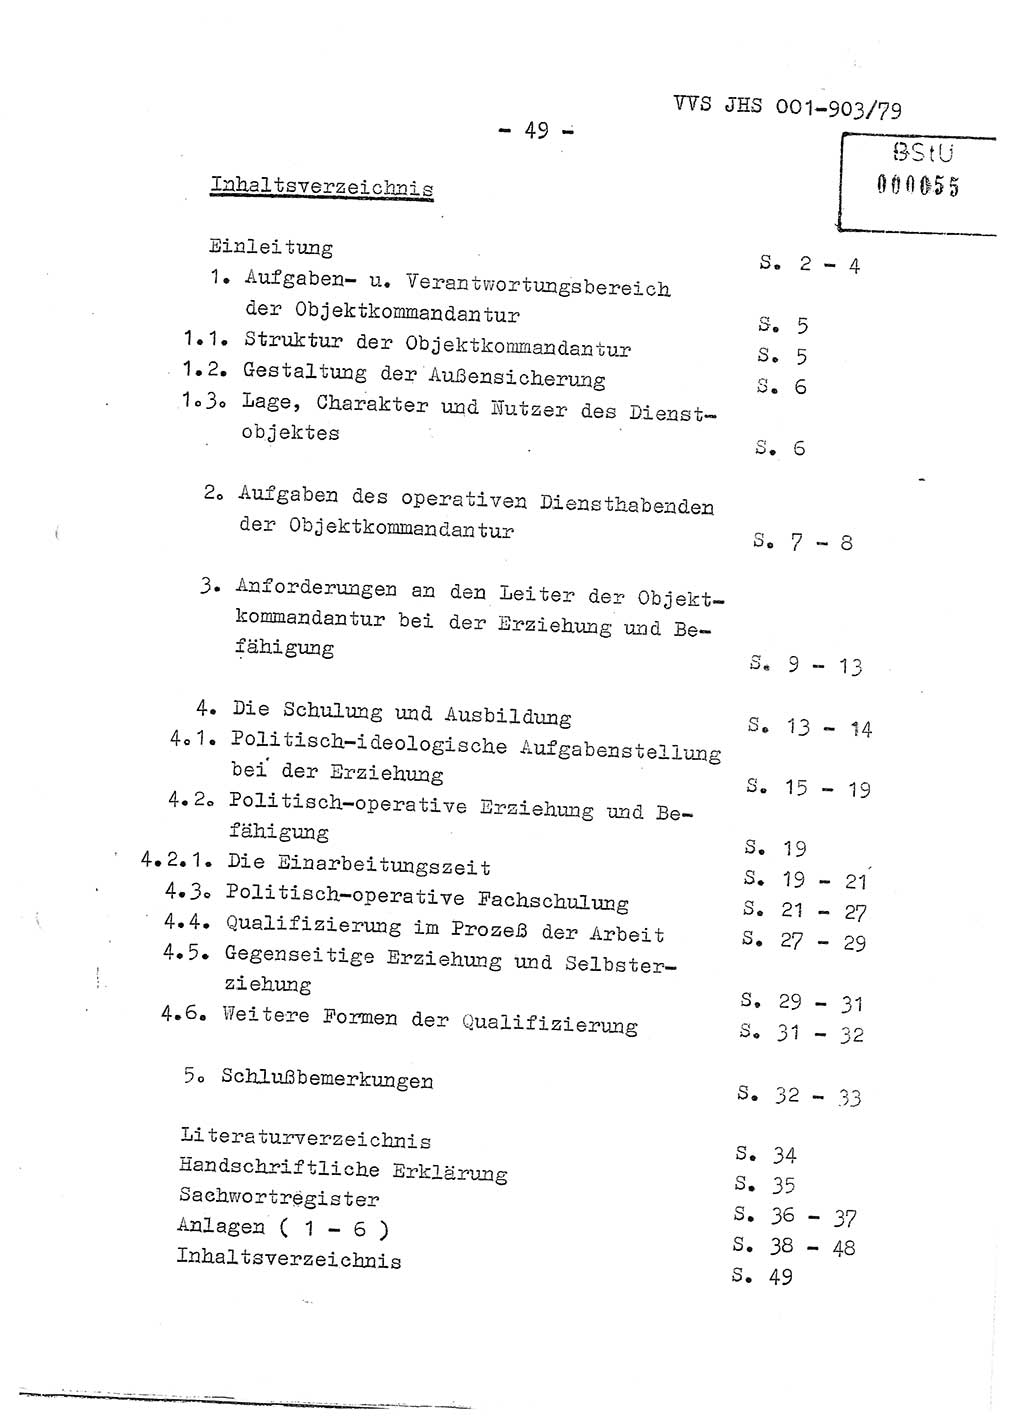 Fachschulabschlußarbeit Oberleutnant Jochen Pfeffer (HA Ⅸ/AGL), Ministerium für Staatssicherheit (MfS) [Deutsche Demokratische Republik (DDR)], Juristische Hochschule (JHS), Vertrauliche Verschlußsache (VVS) 001-903/79, Potsdam 1979, Seite 49 (FS-Abschl.-Arb. MfS DDR JHS VVS 001-903/79 1979, S. 49)